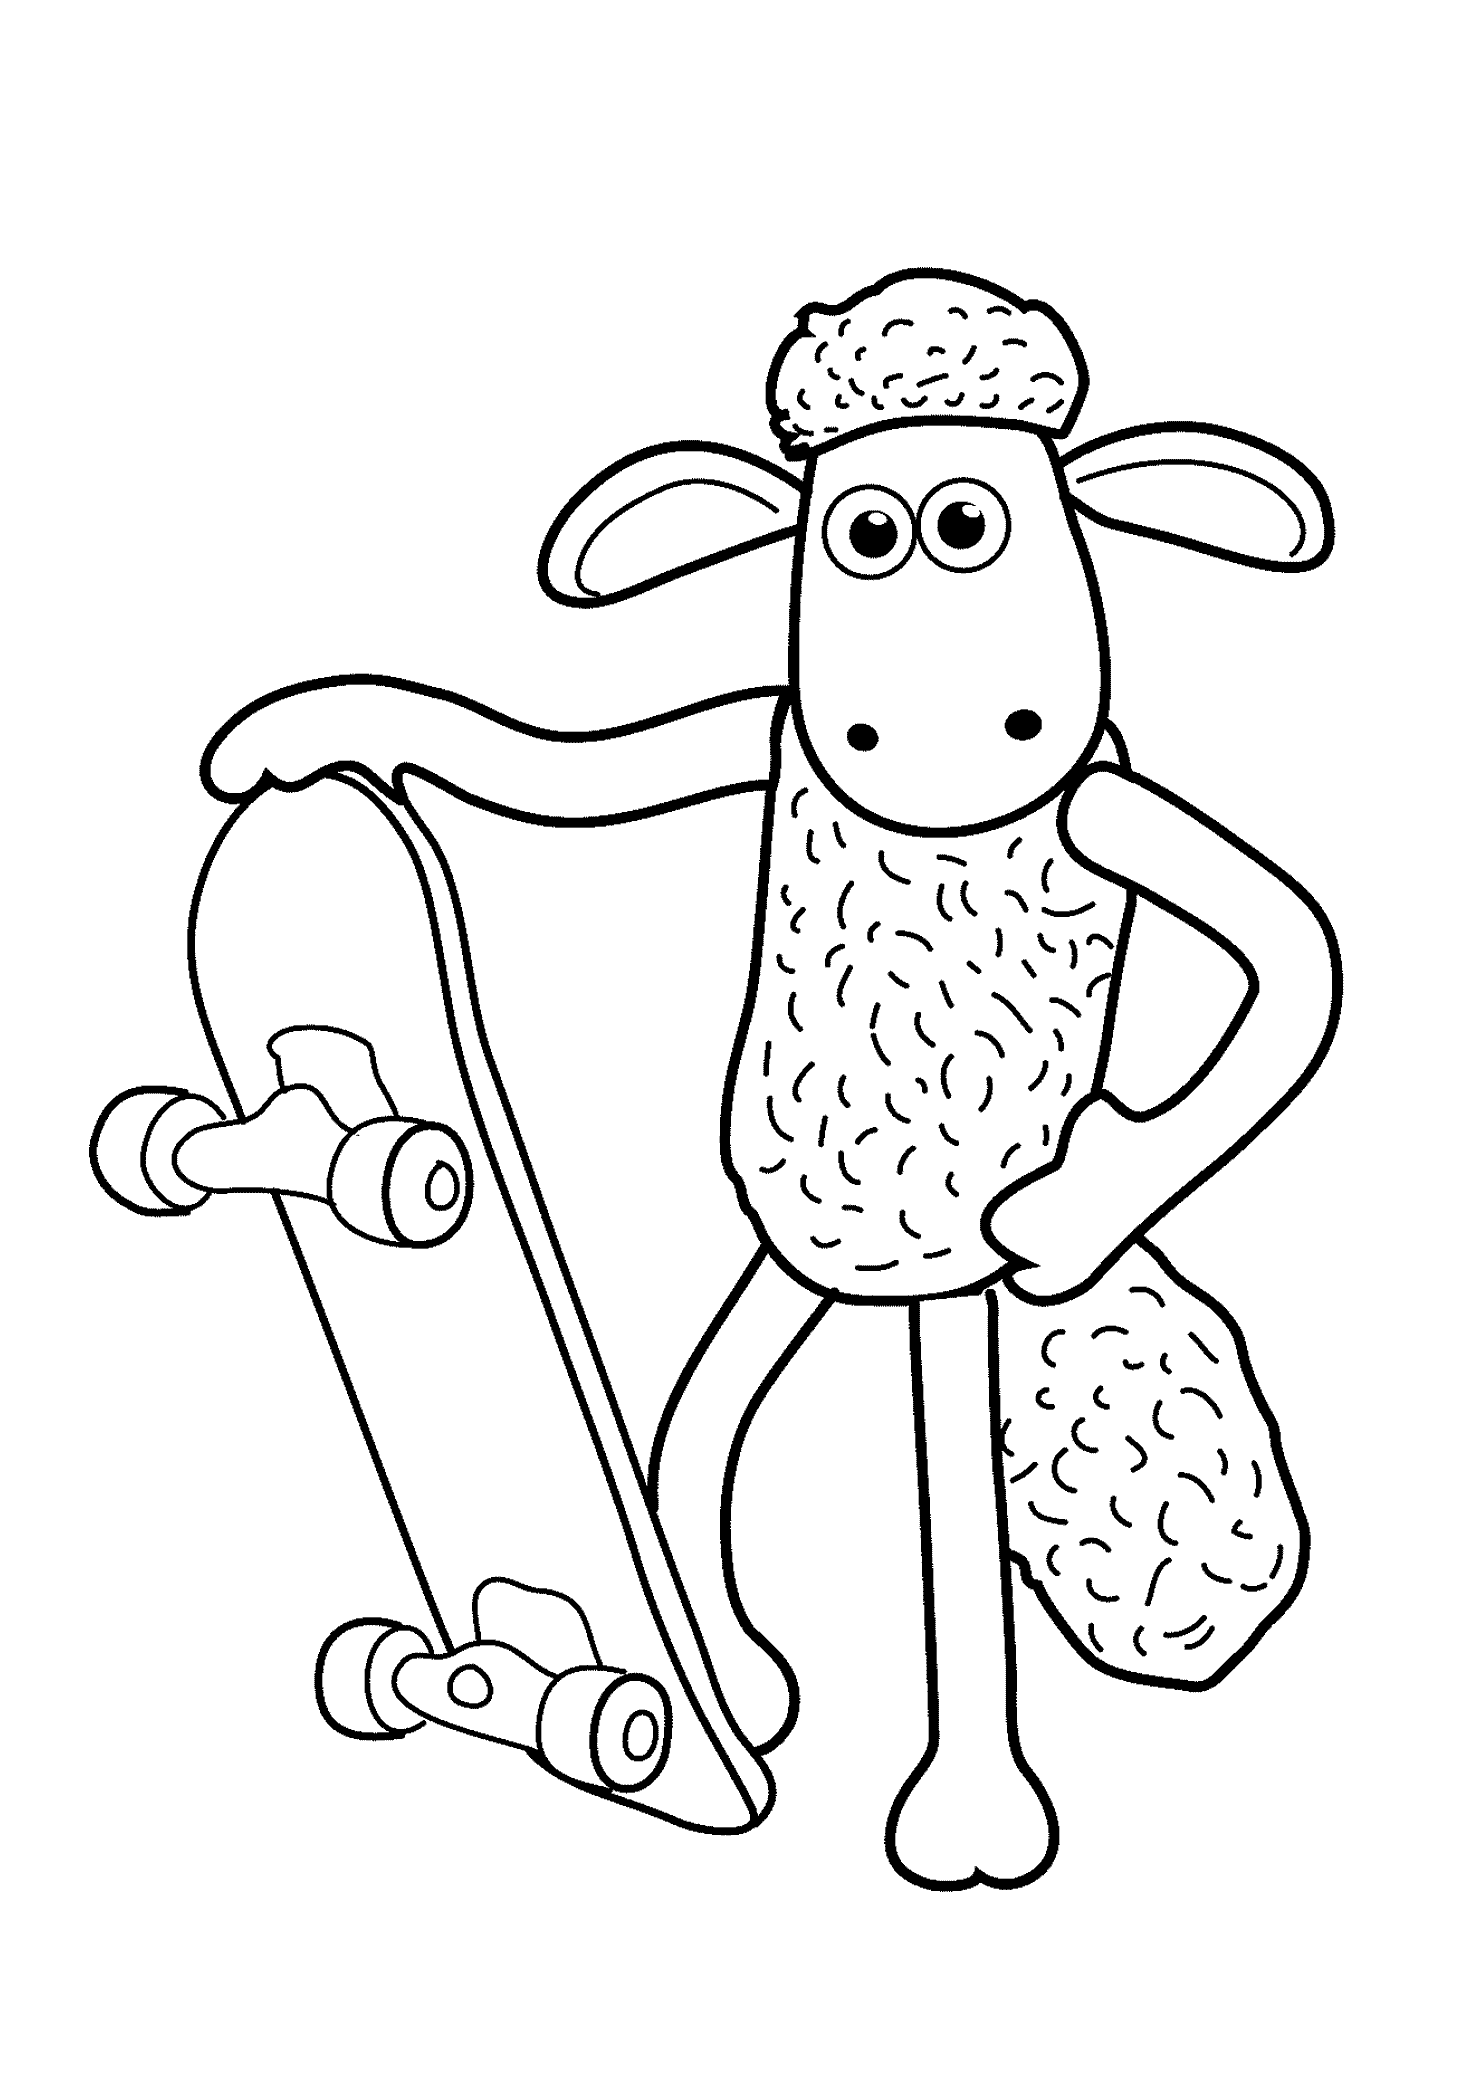 Shaun The Sheep Play Skateboard Coloring Pages For Kids Bvi Printable Skating And Ska